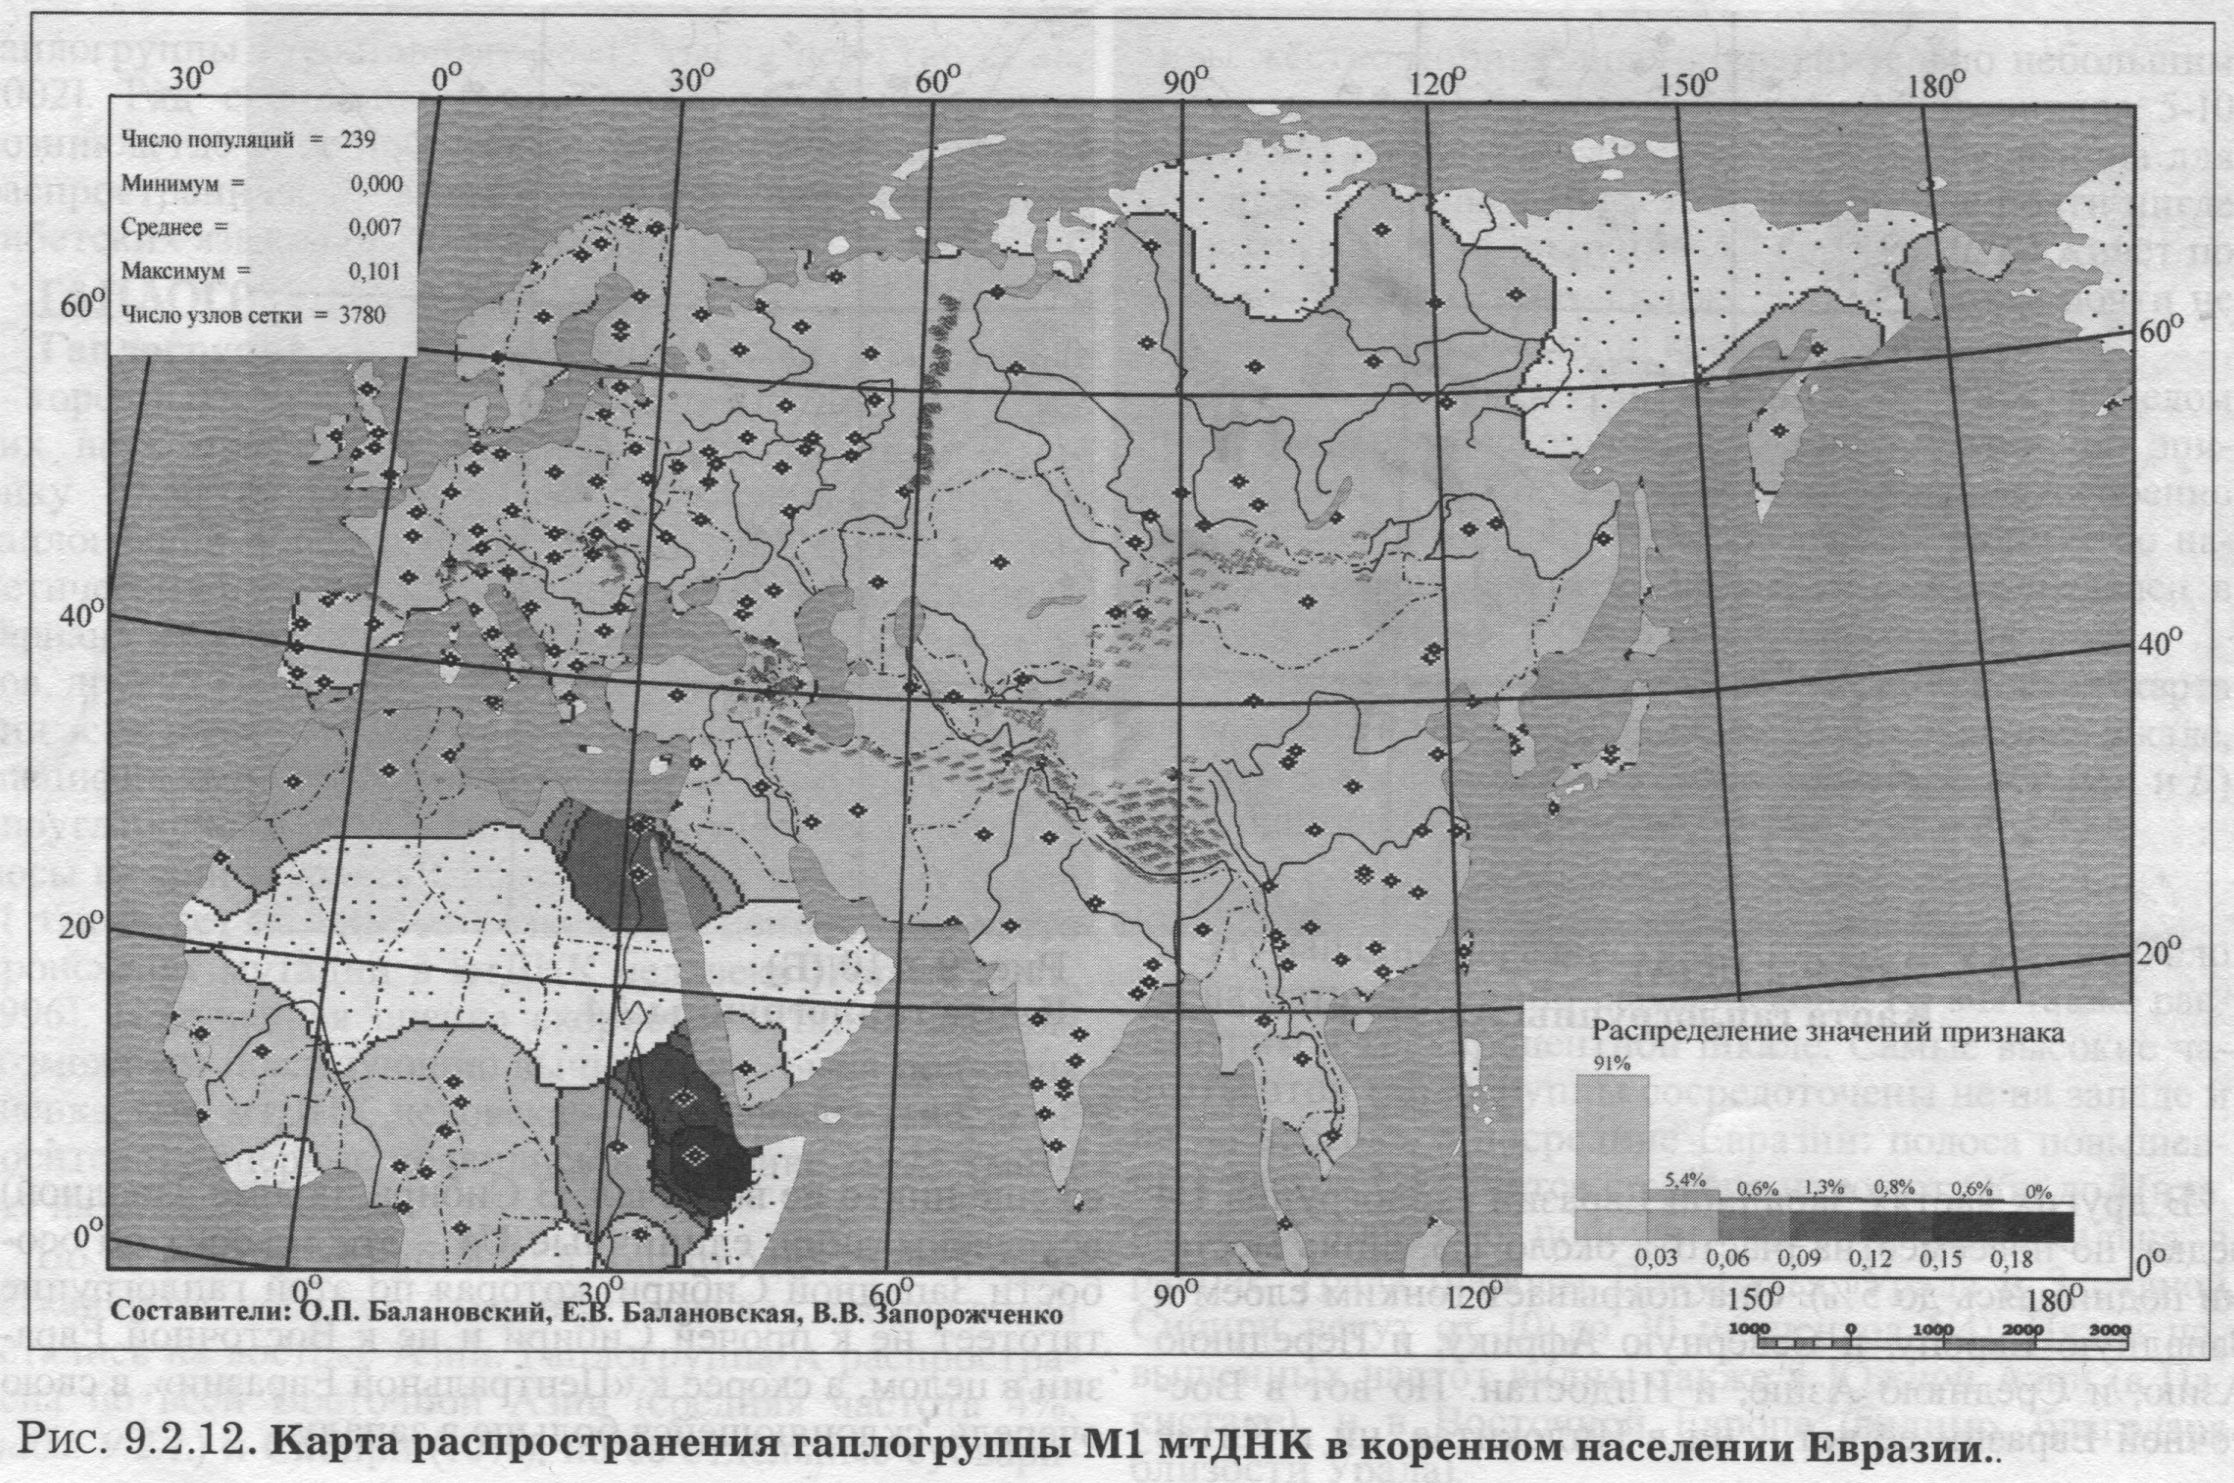 Рис. 9.2.12. Карта распространения гаплогруппы Ml мтДНК в коренном населении Евразии.